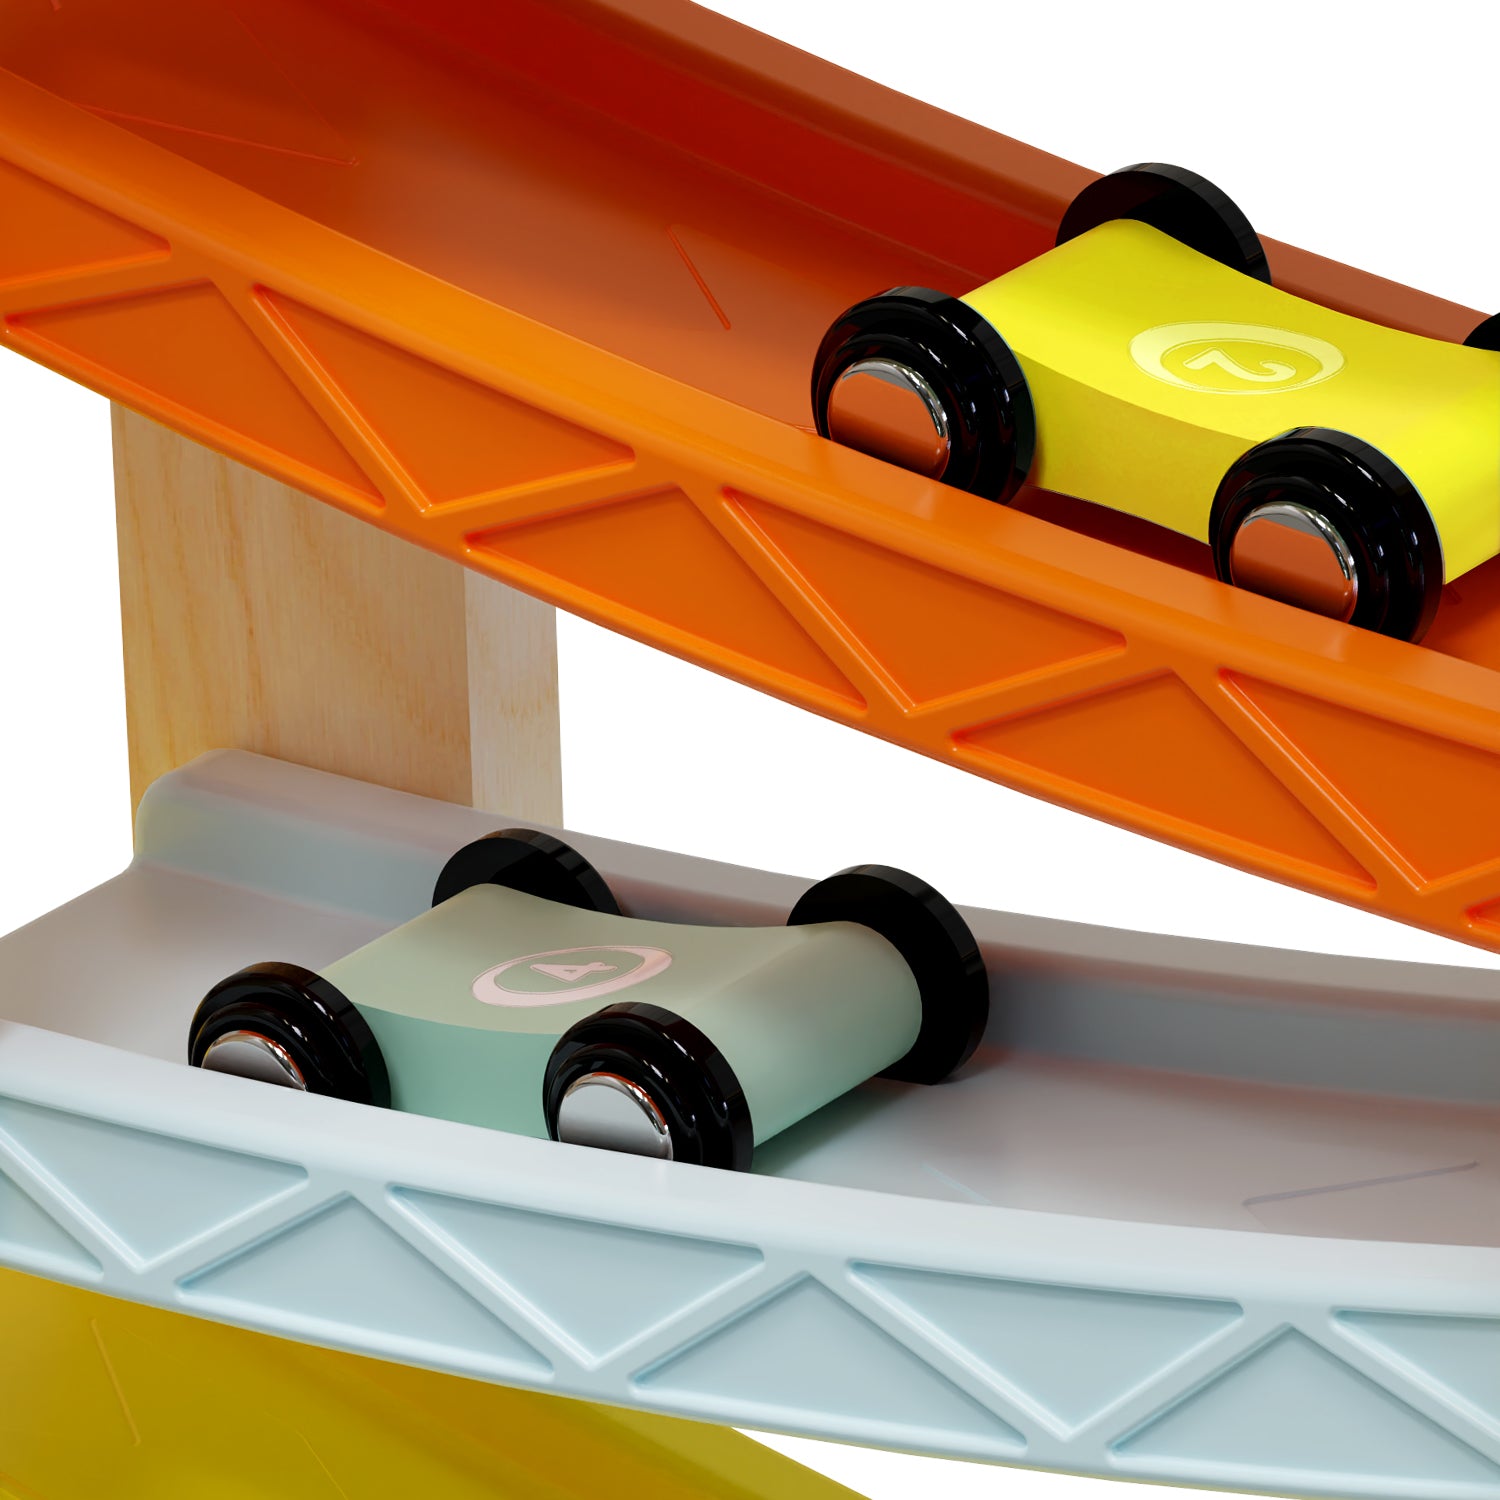 Der Kugelbahn-Spaß für kleine Rennfahrer:innen: Die Auto Rennbahn mit 4 Autos funktioniert wie eine Kugelbahn. Statt Kugeln rasen jedoch kleine Rennautos aus Holz die Bahn hinab. 